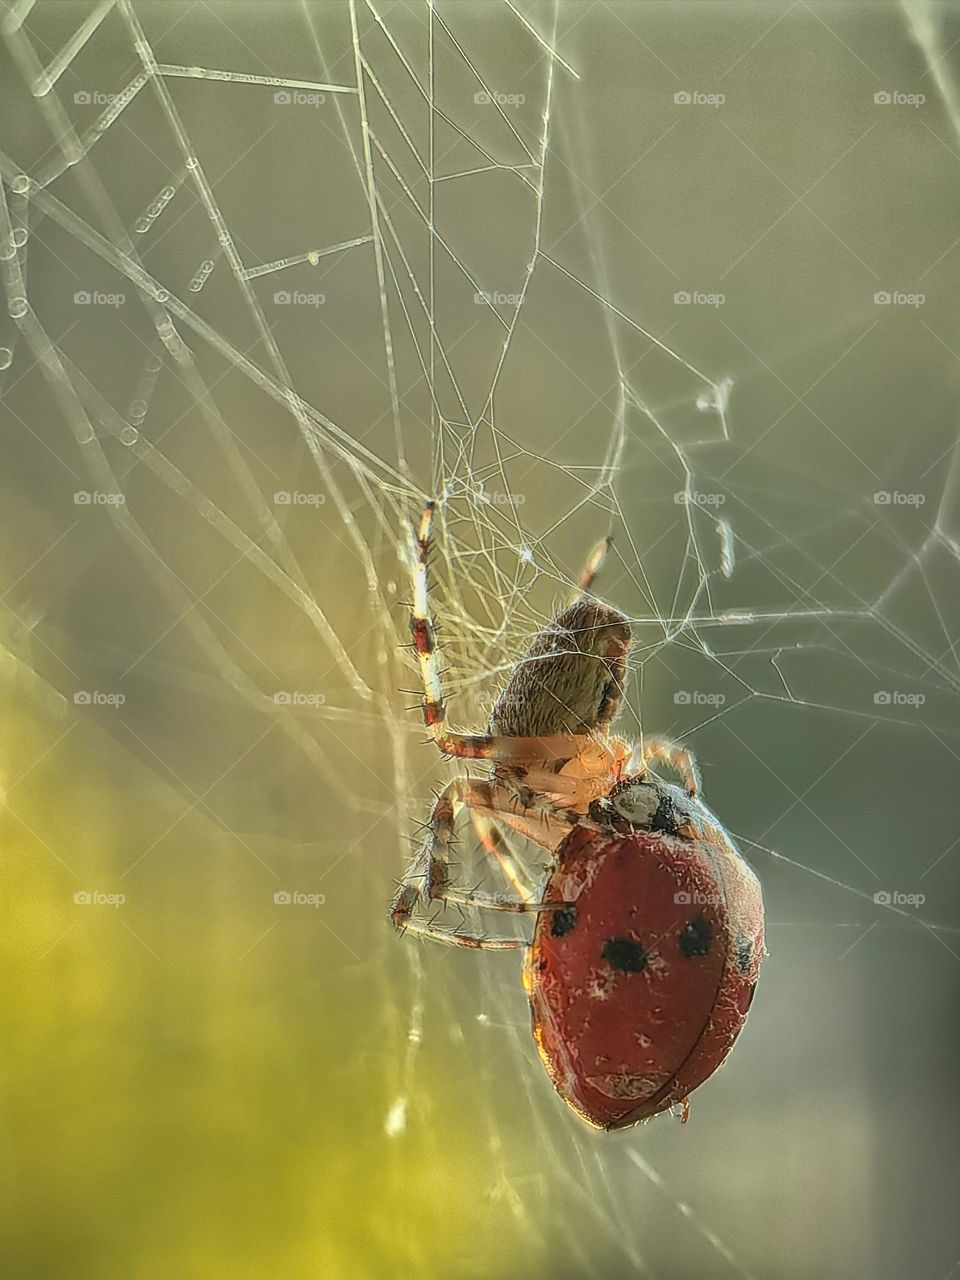 A spider eats a ladybug